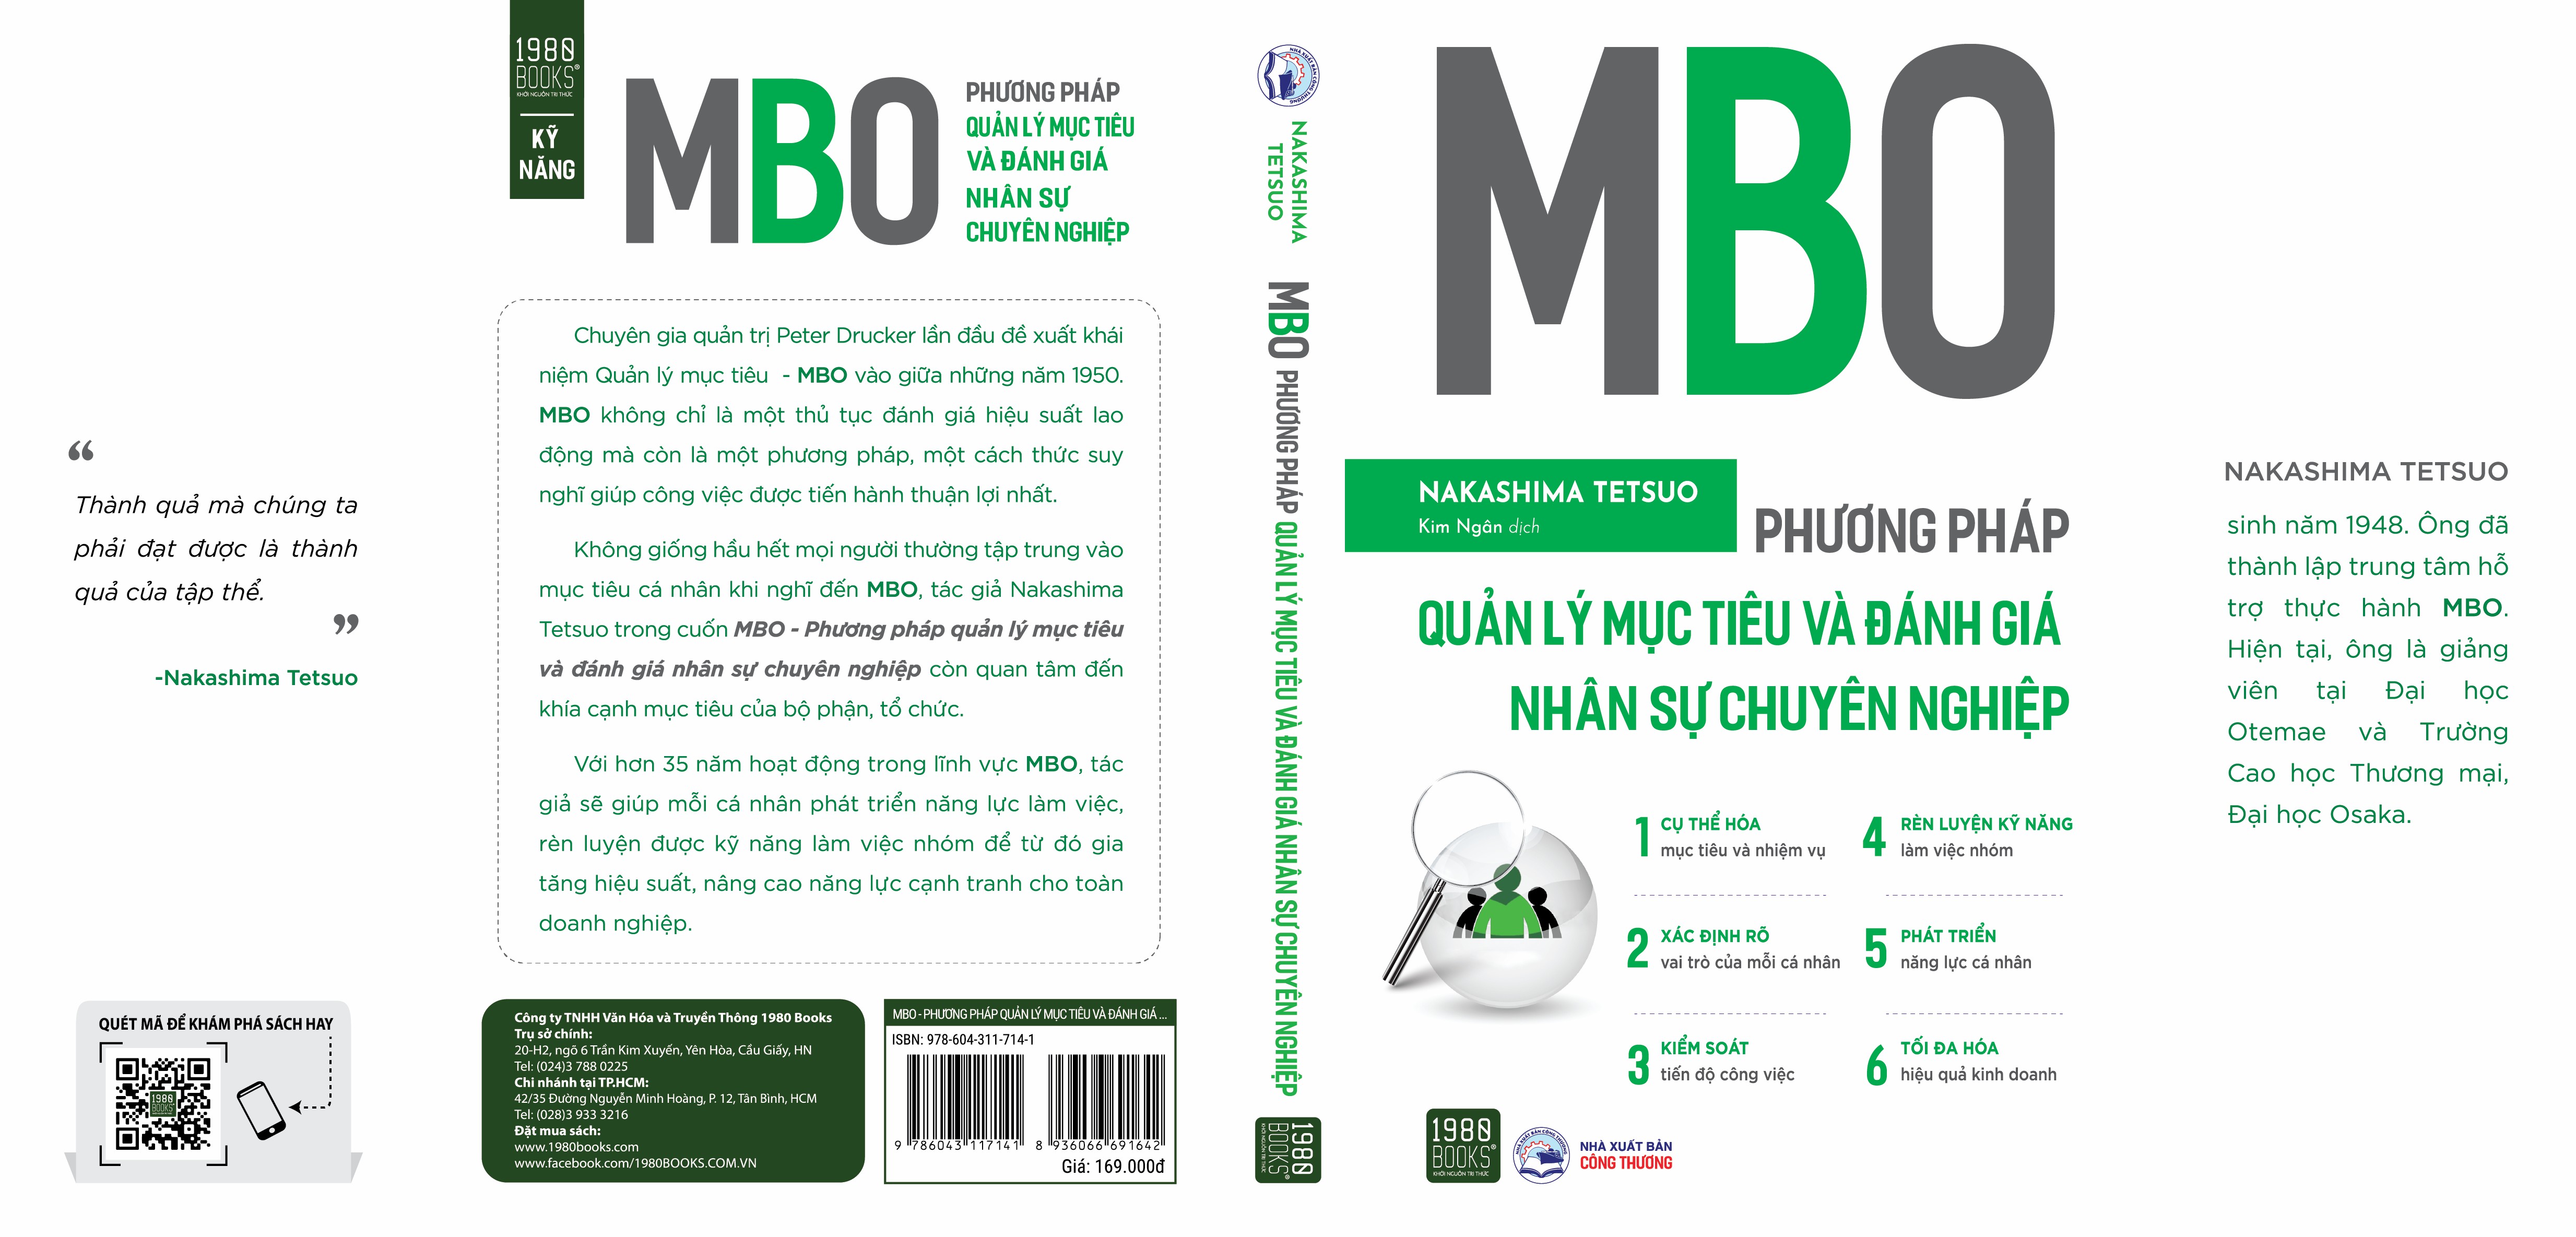 Sách - MBO Phương pháp quản lý mục tiêu và đánh giá nhân sự chuyên nghiệp - 1980Books